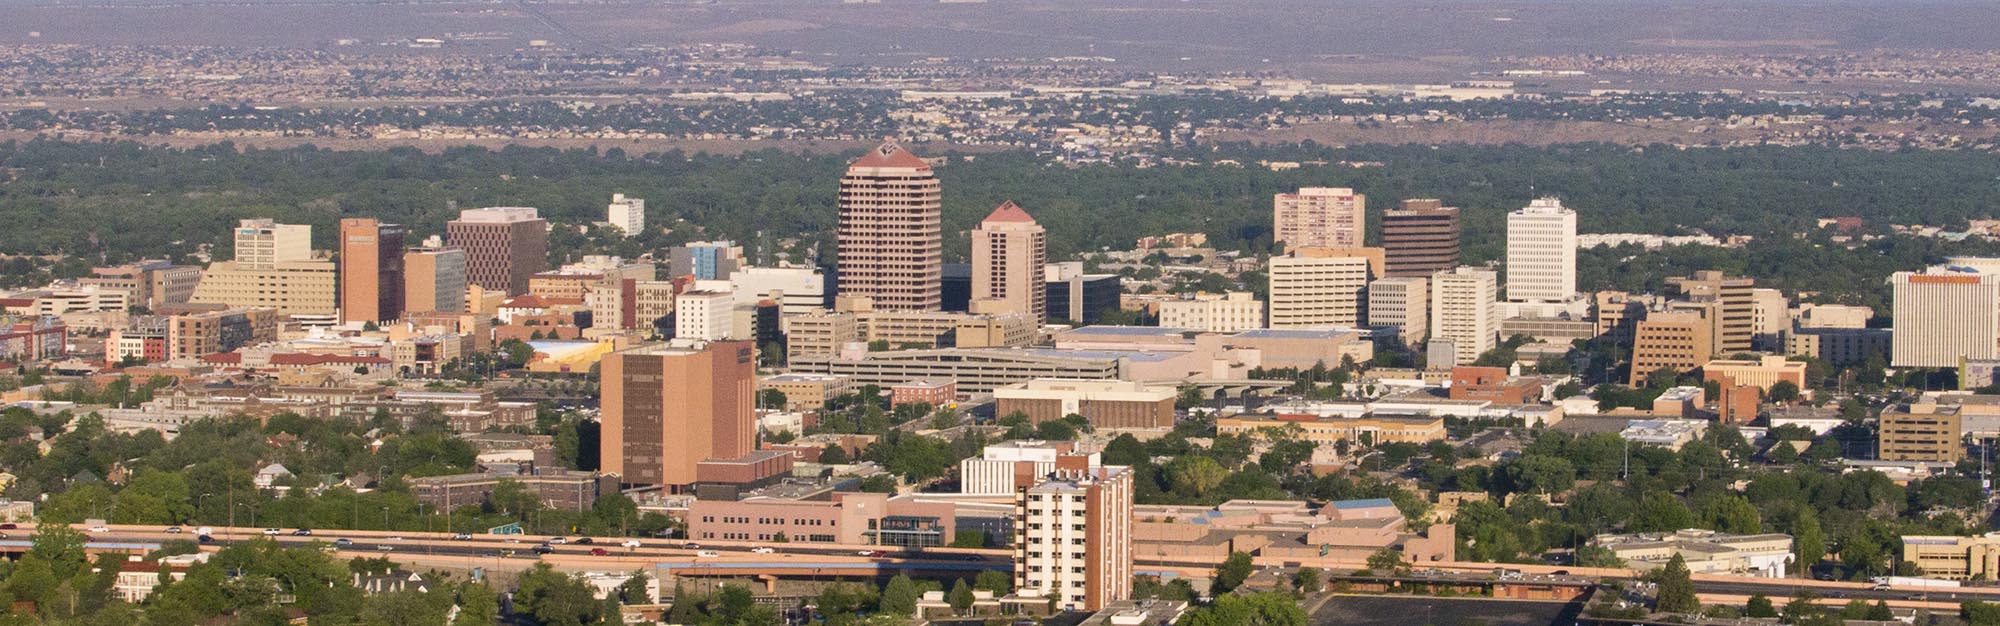 Nhìn từ trên không của trung tâm thành phố Albuquerque